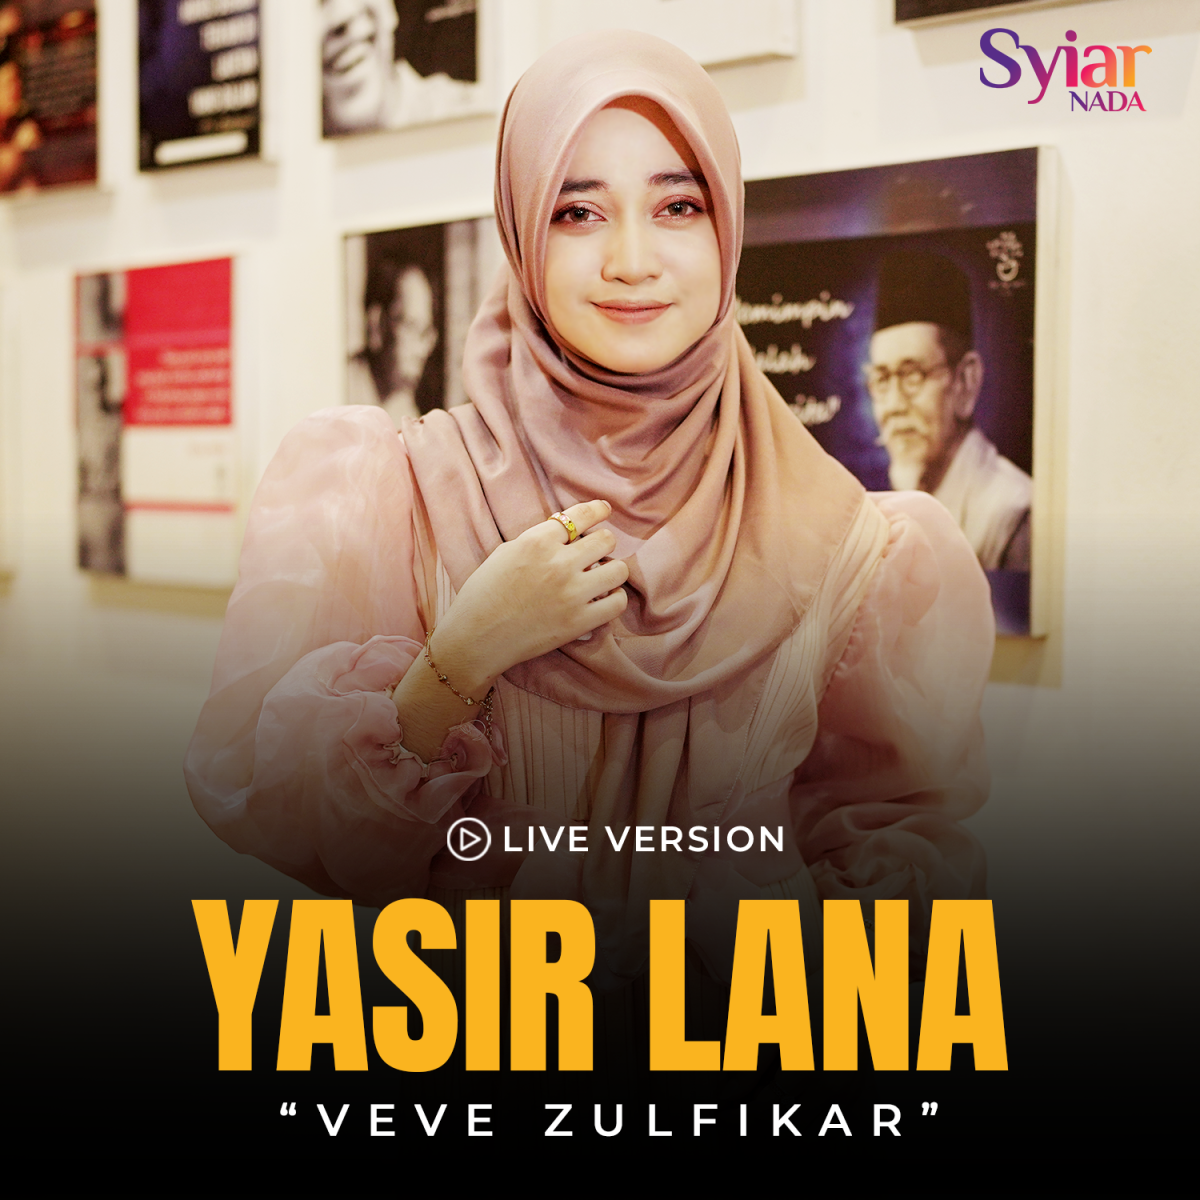 Lantunan Lagu Yasir Lana Versi Live, Veve Zulfikar Sukses Memukau!